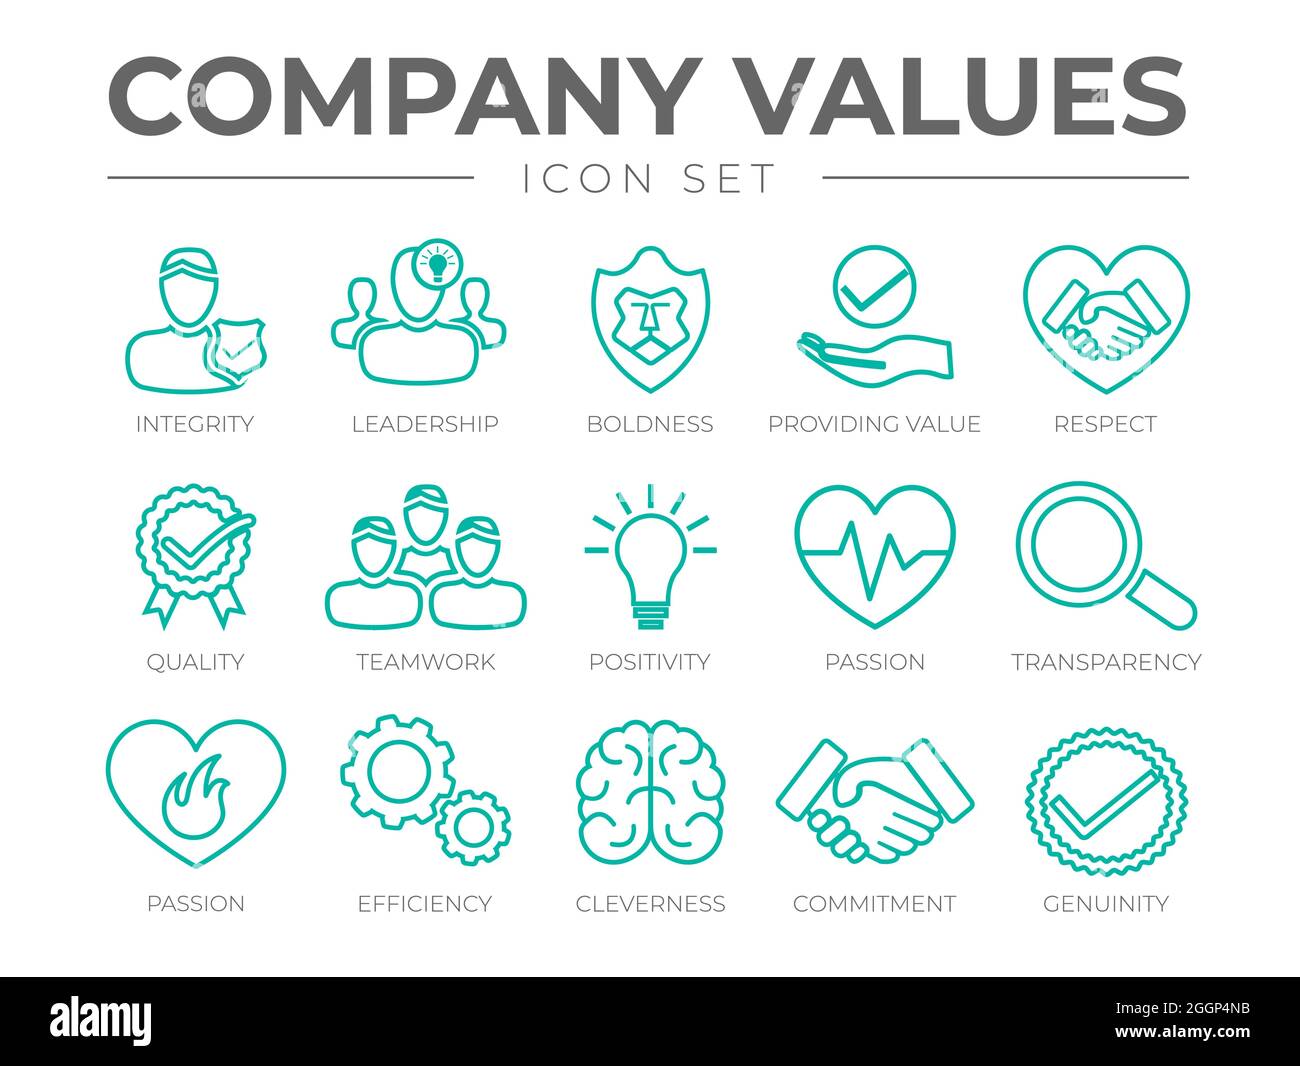 Symbolsatz Für Unternehmenswerte. Integrität, Führung, Kühnheit, Wert, Respekt, Qualität, Teamarbeit, Positive Einstellung, Leidenschaft, Transparenz, Leidenschaft, Effizienz Stock Vektor